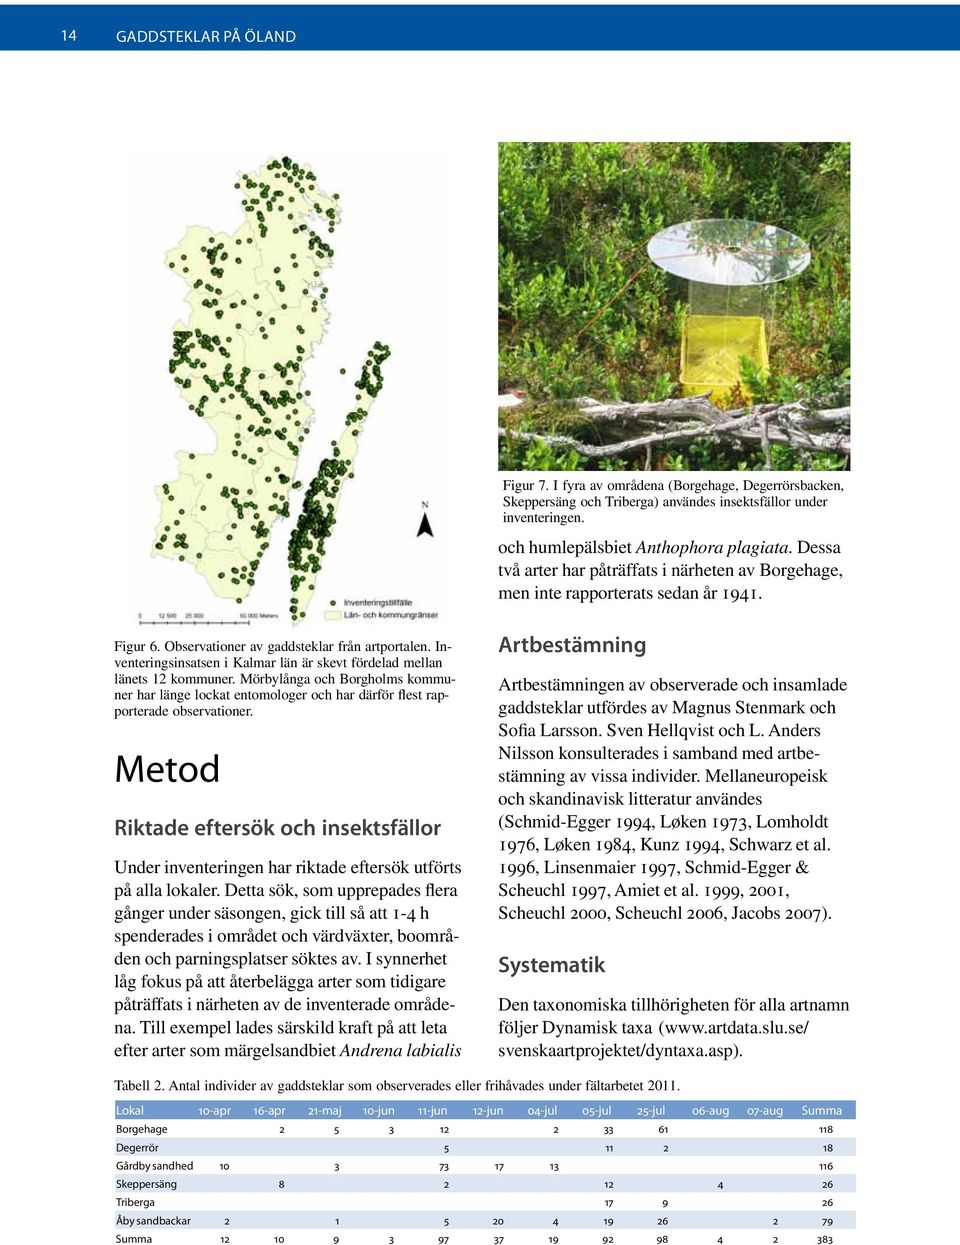 Inventeringsinsatsen i Kalmar län är skevt fördelad mellan länets 12 kommuner. Mörbylånga och Borgholms kommuner har länge lockat entomologer och har därför flest rapporterade observationer.